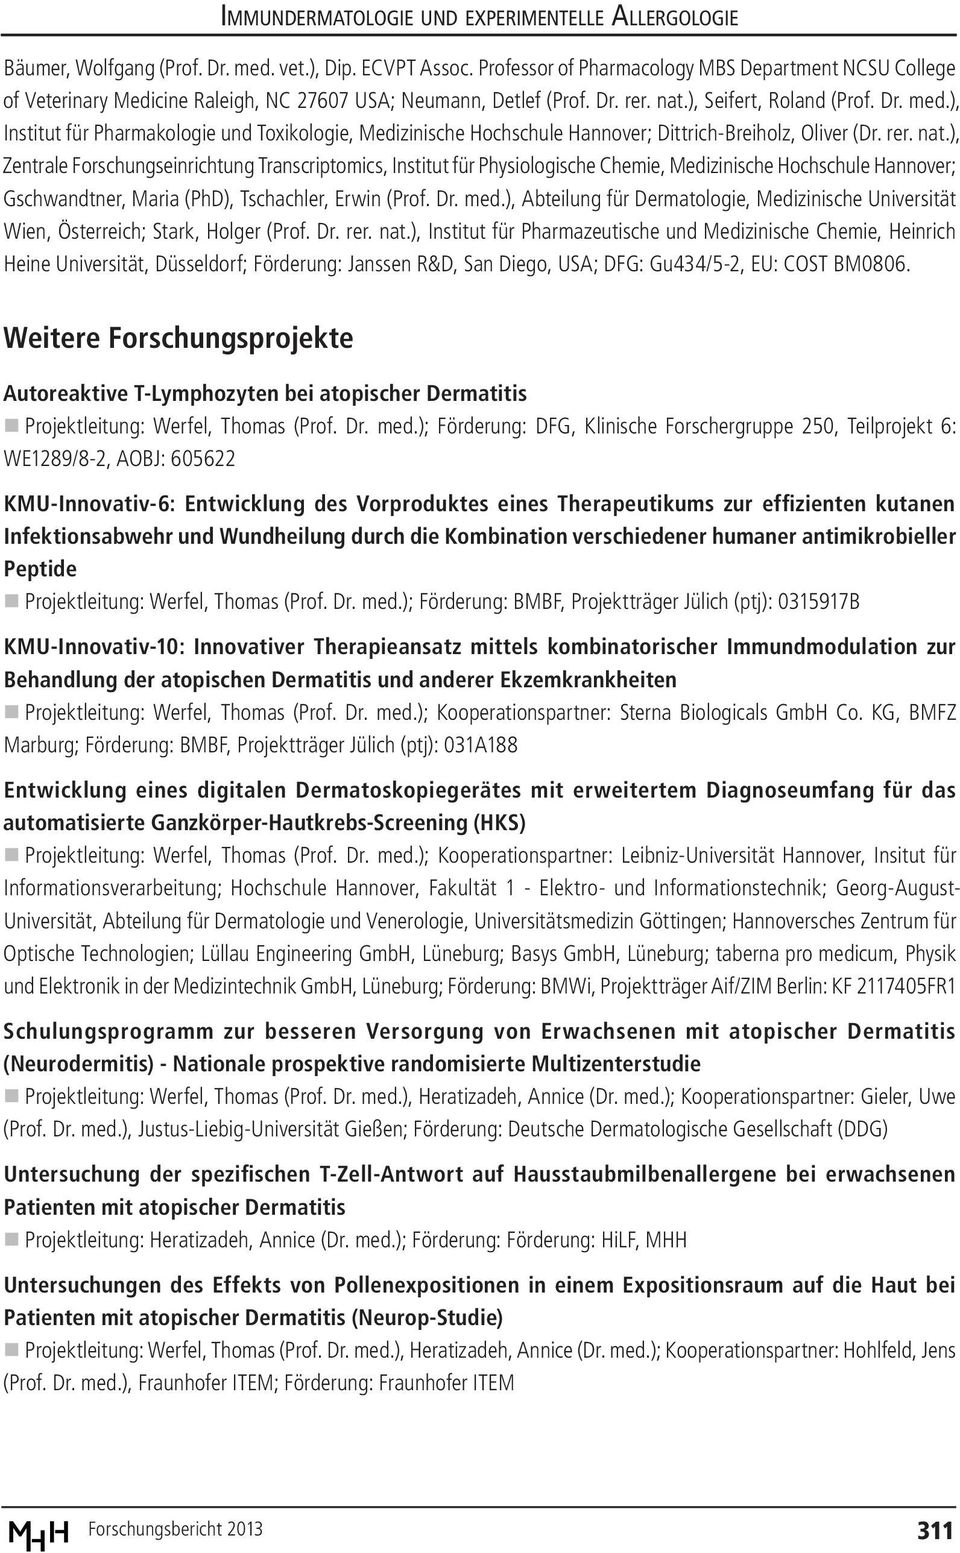 ), Zentrale Forschungseinrichtung Transcriptomics, Institut für Physiologische Chemie, Medizinische Hochschule Hannover; Gschwandtner, Maria (PhD), Tschachler, Erwin (Prof. Dr. med.